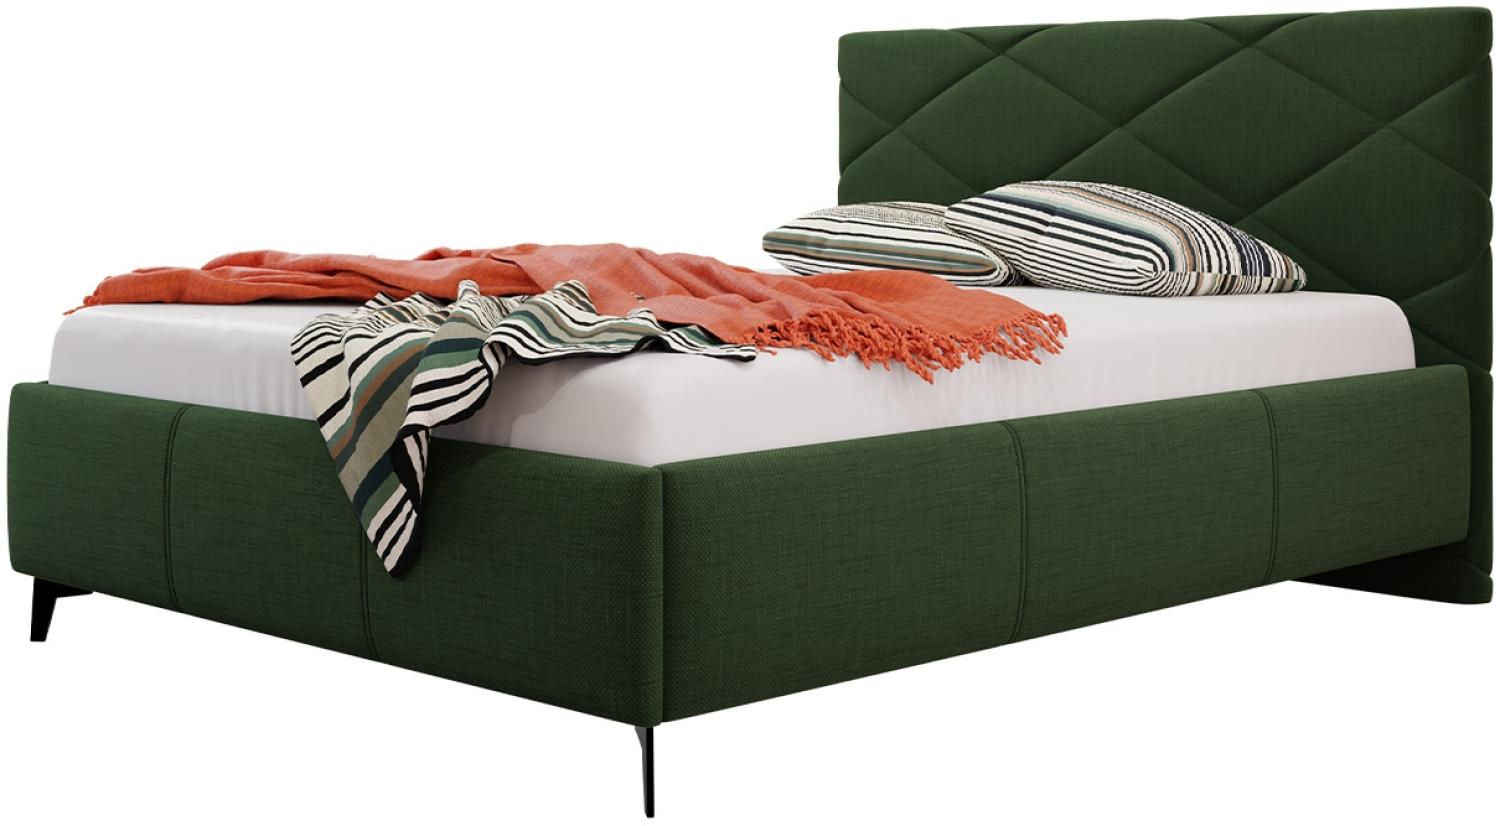 Polsterbett mit Bettkasten Samdom (Farbe: Breeze 11, Größe: 180x200 cm) Bild 1